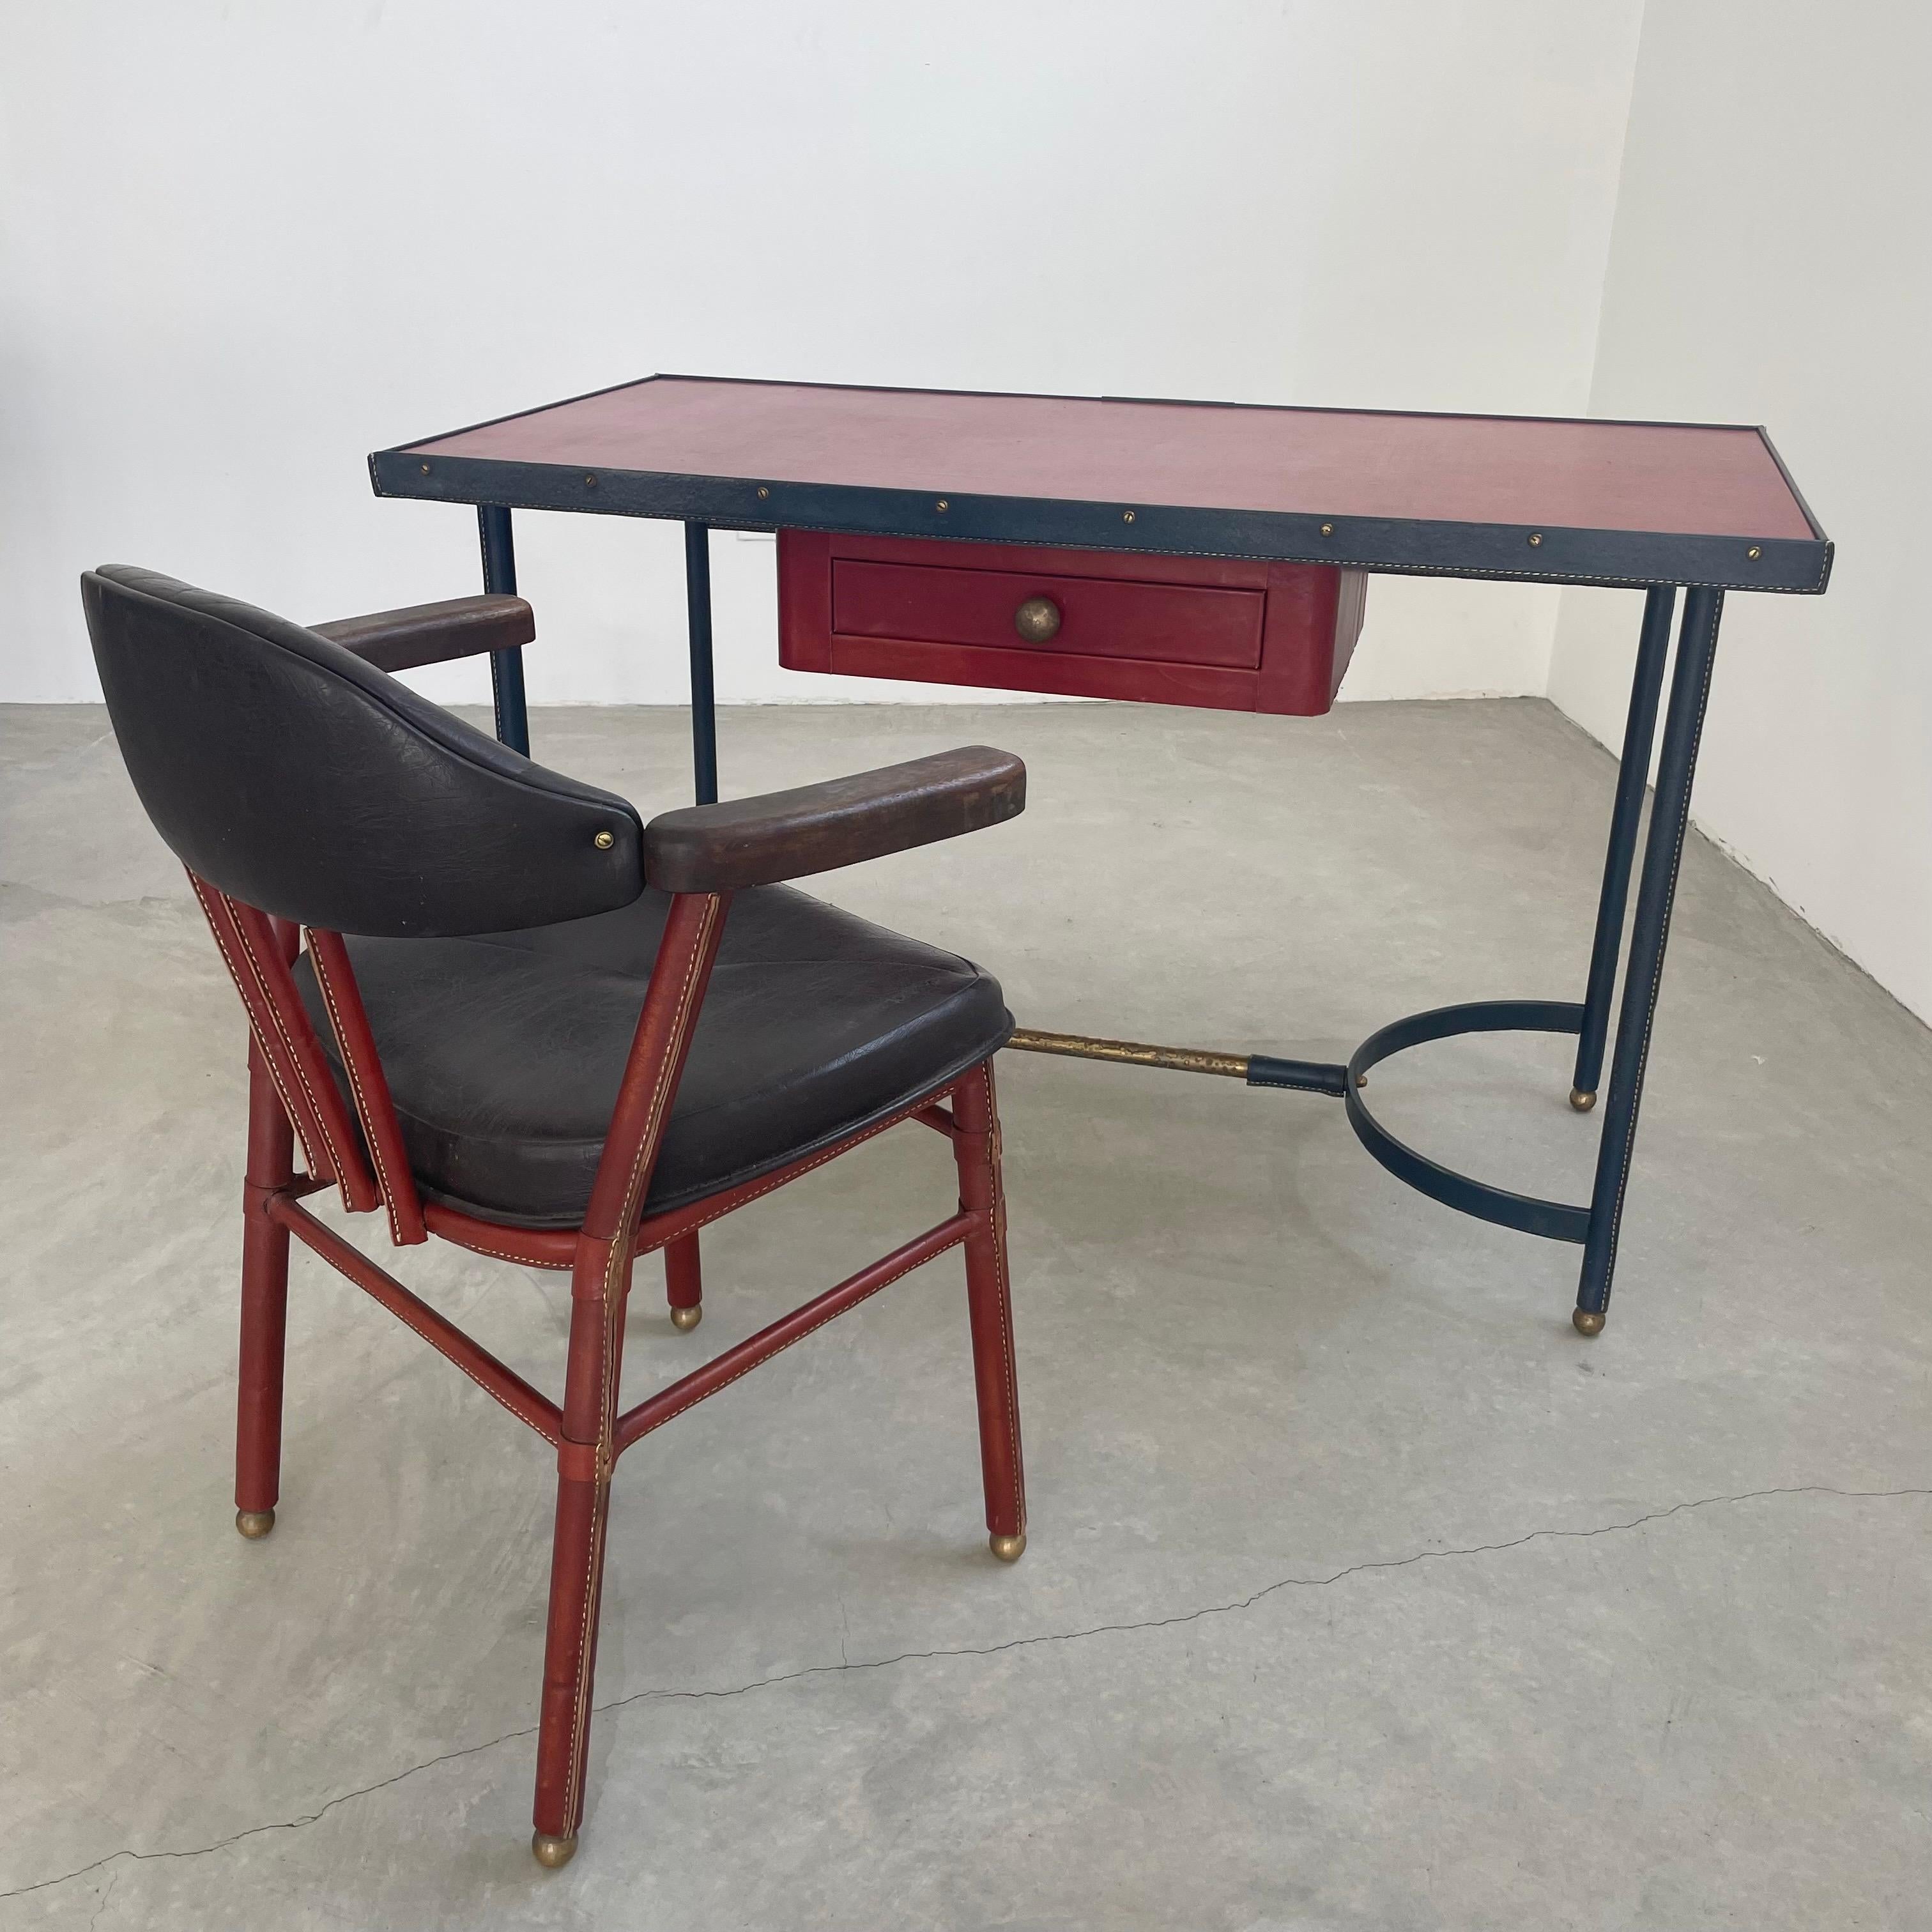 Außergewöhnlicher Schreibtisch aus der Zeit des Art déco mit passendem Stuhl des französischen Modernisten Jacques Adnet. Der gesamte Schreibtisch ist mit Leder umhüllt. Eisengestell mit 4 Pfosten, umgedrehten U-förmigen Sockeln und